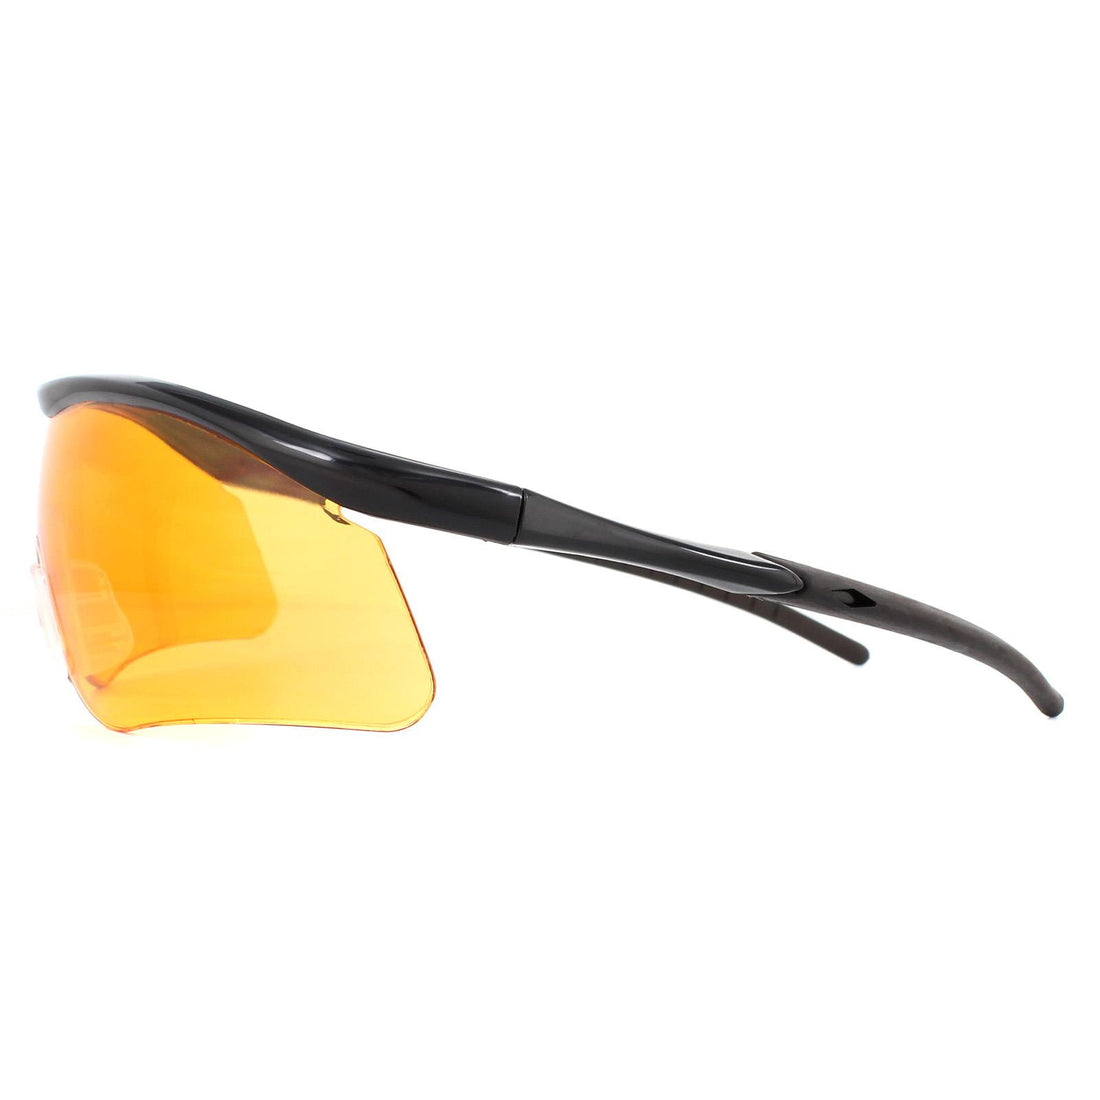 Eyelevel Impact Shooting Safety Glasses Sunglasses Black Orange Shatterproof